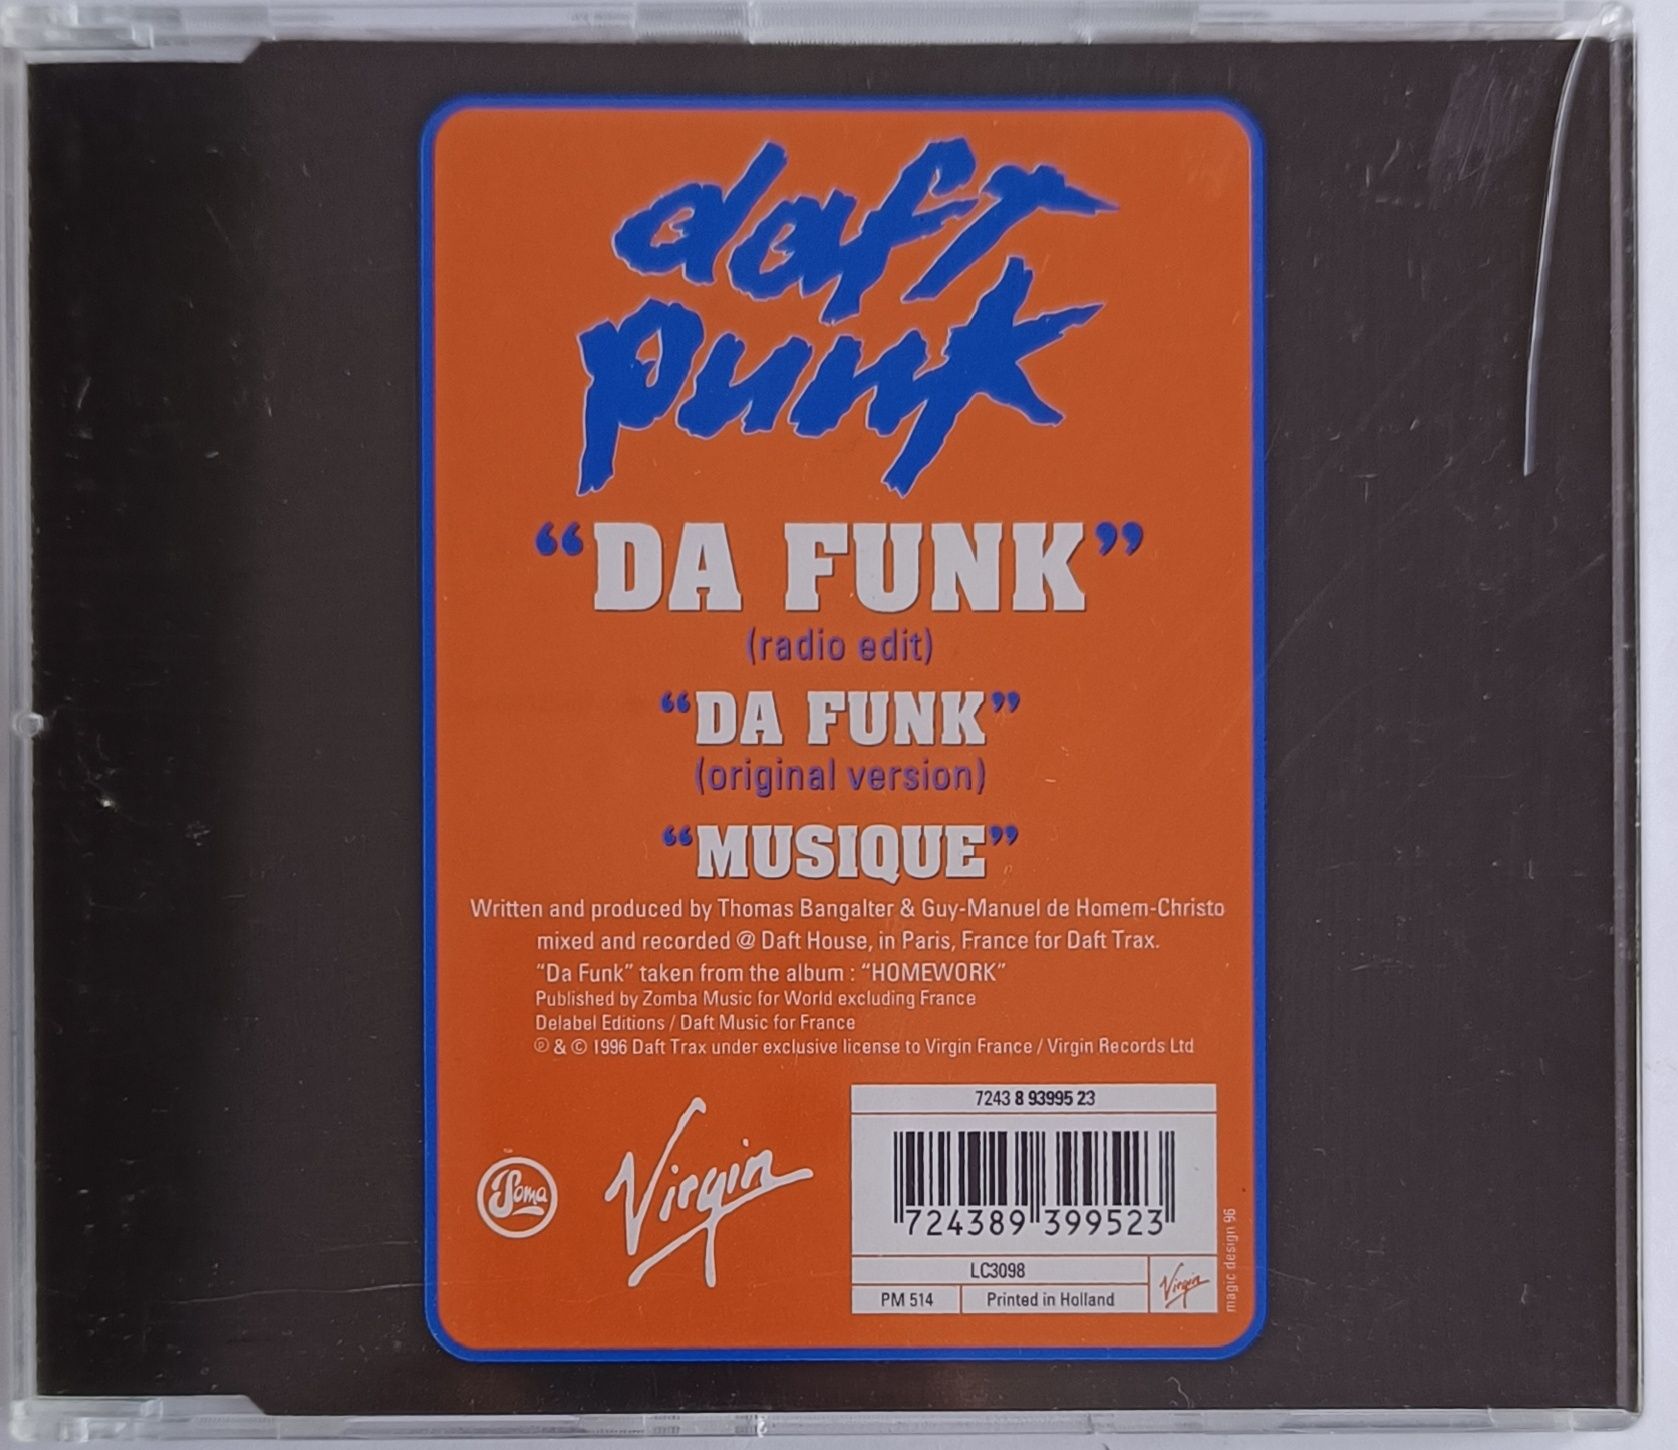 CDs Daft Punk Da Funk 1996r Promo